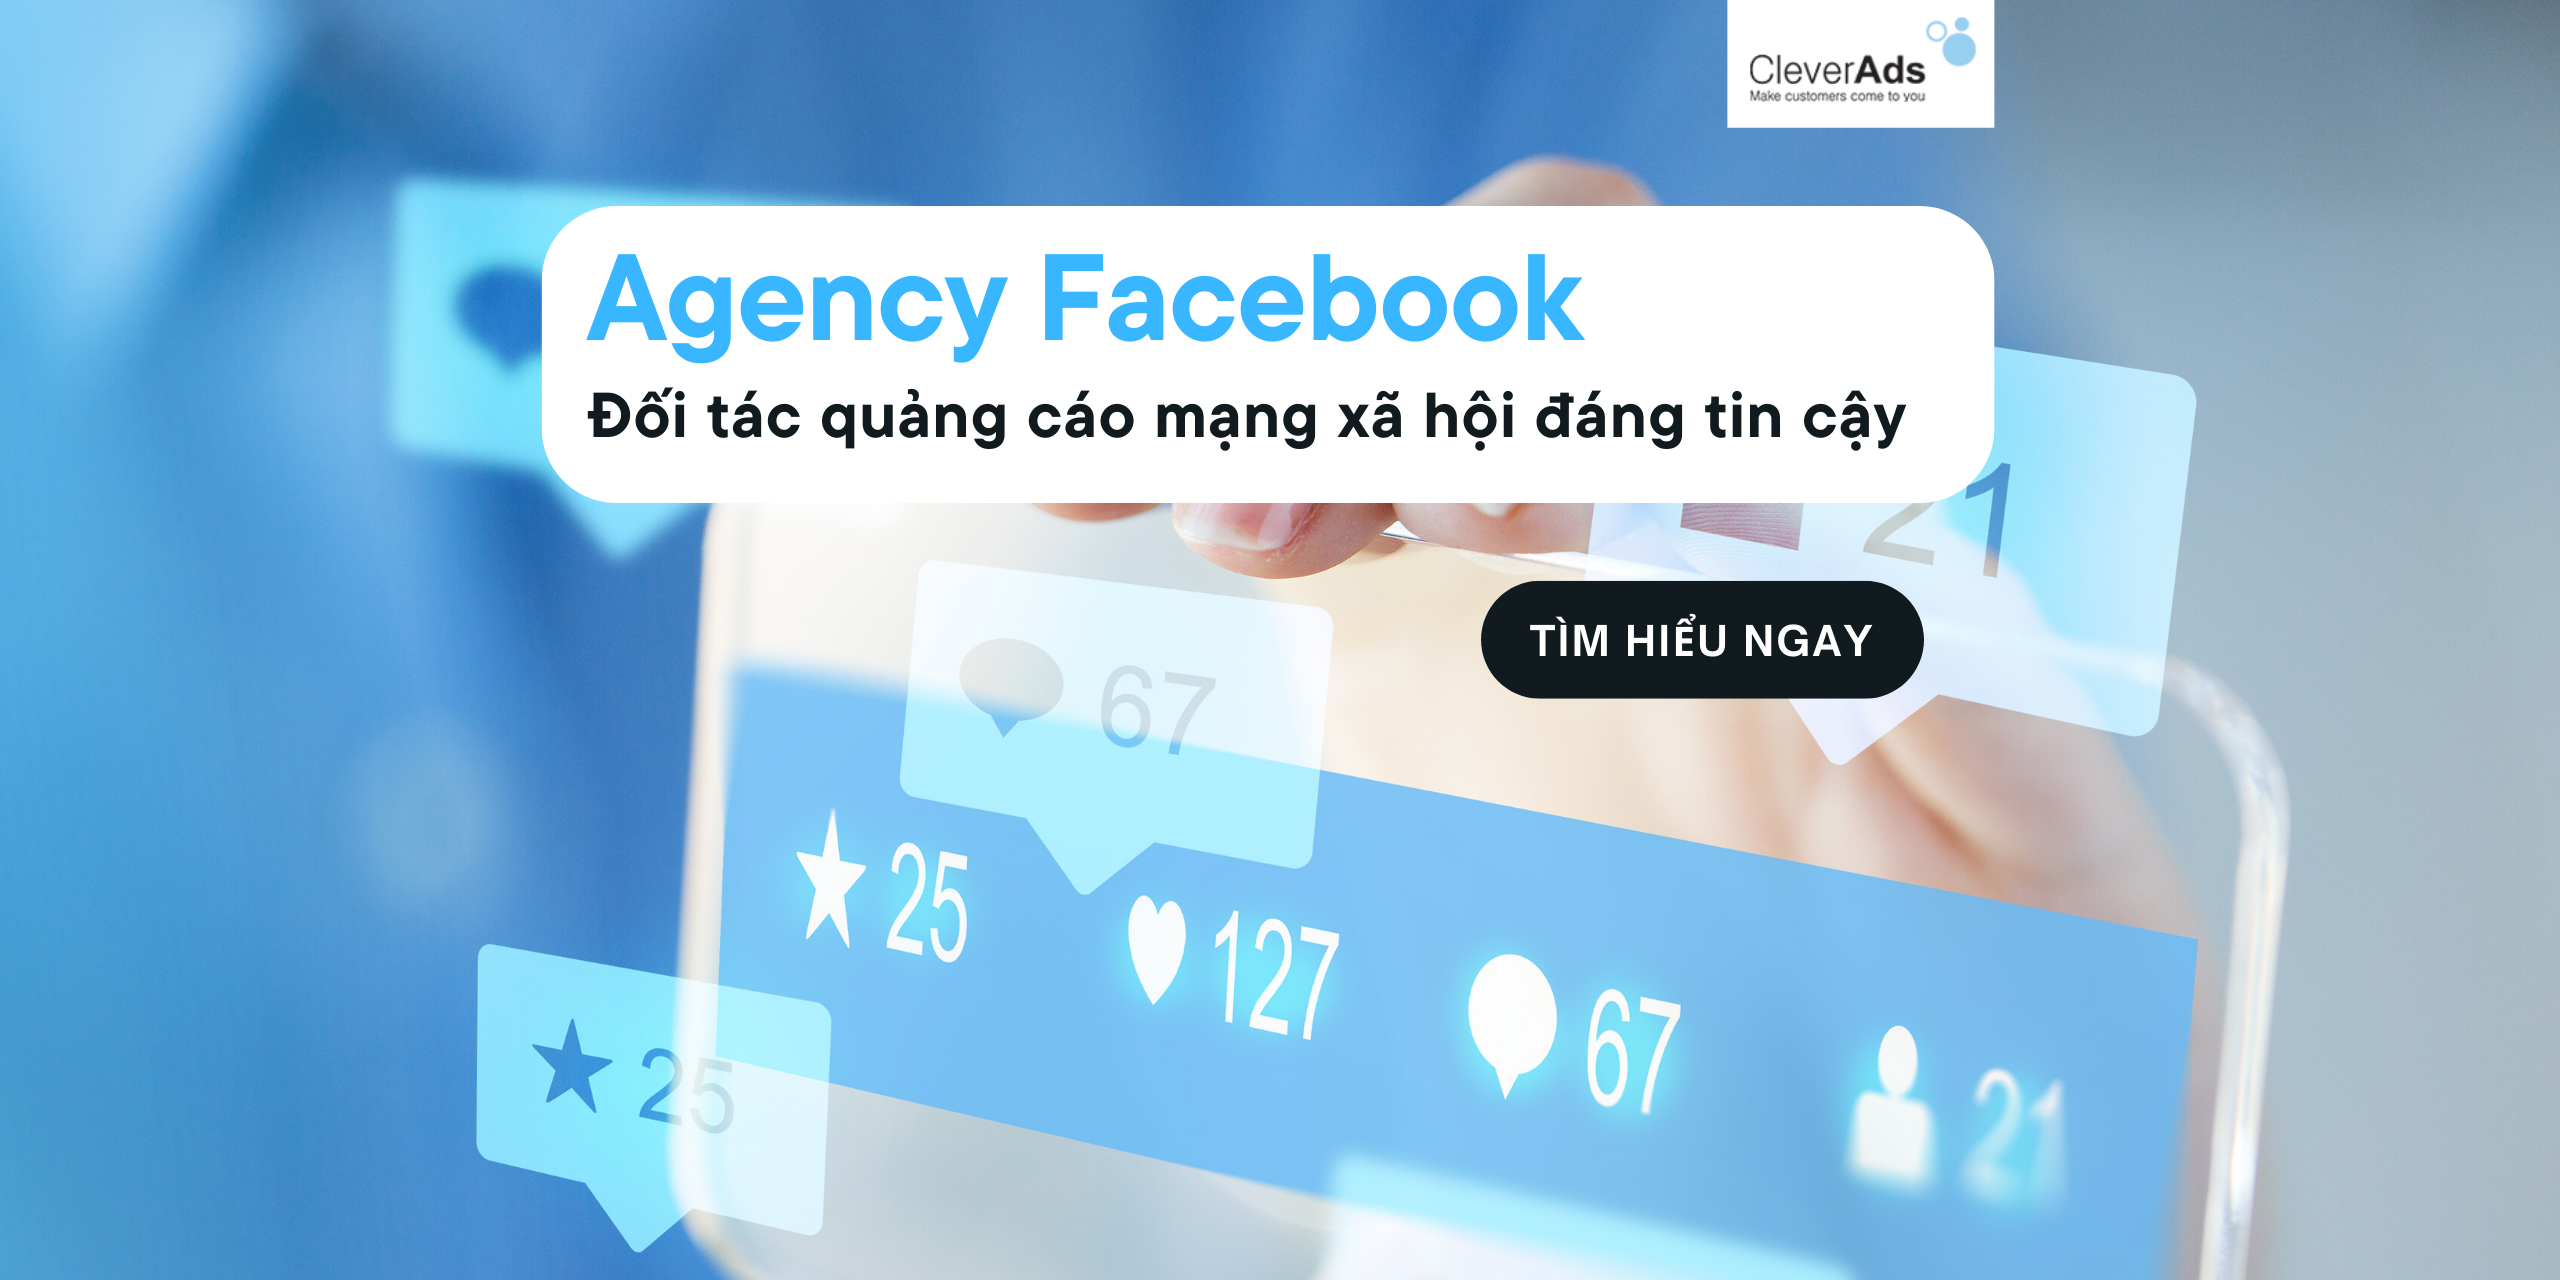 Agency Facebook – Đối tác quảng cáo mạng xã hội đáng tin cậy